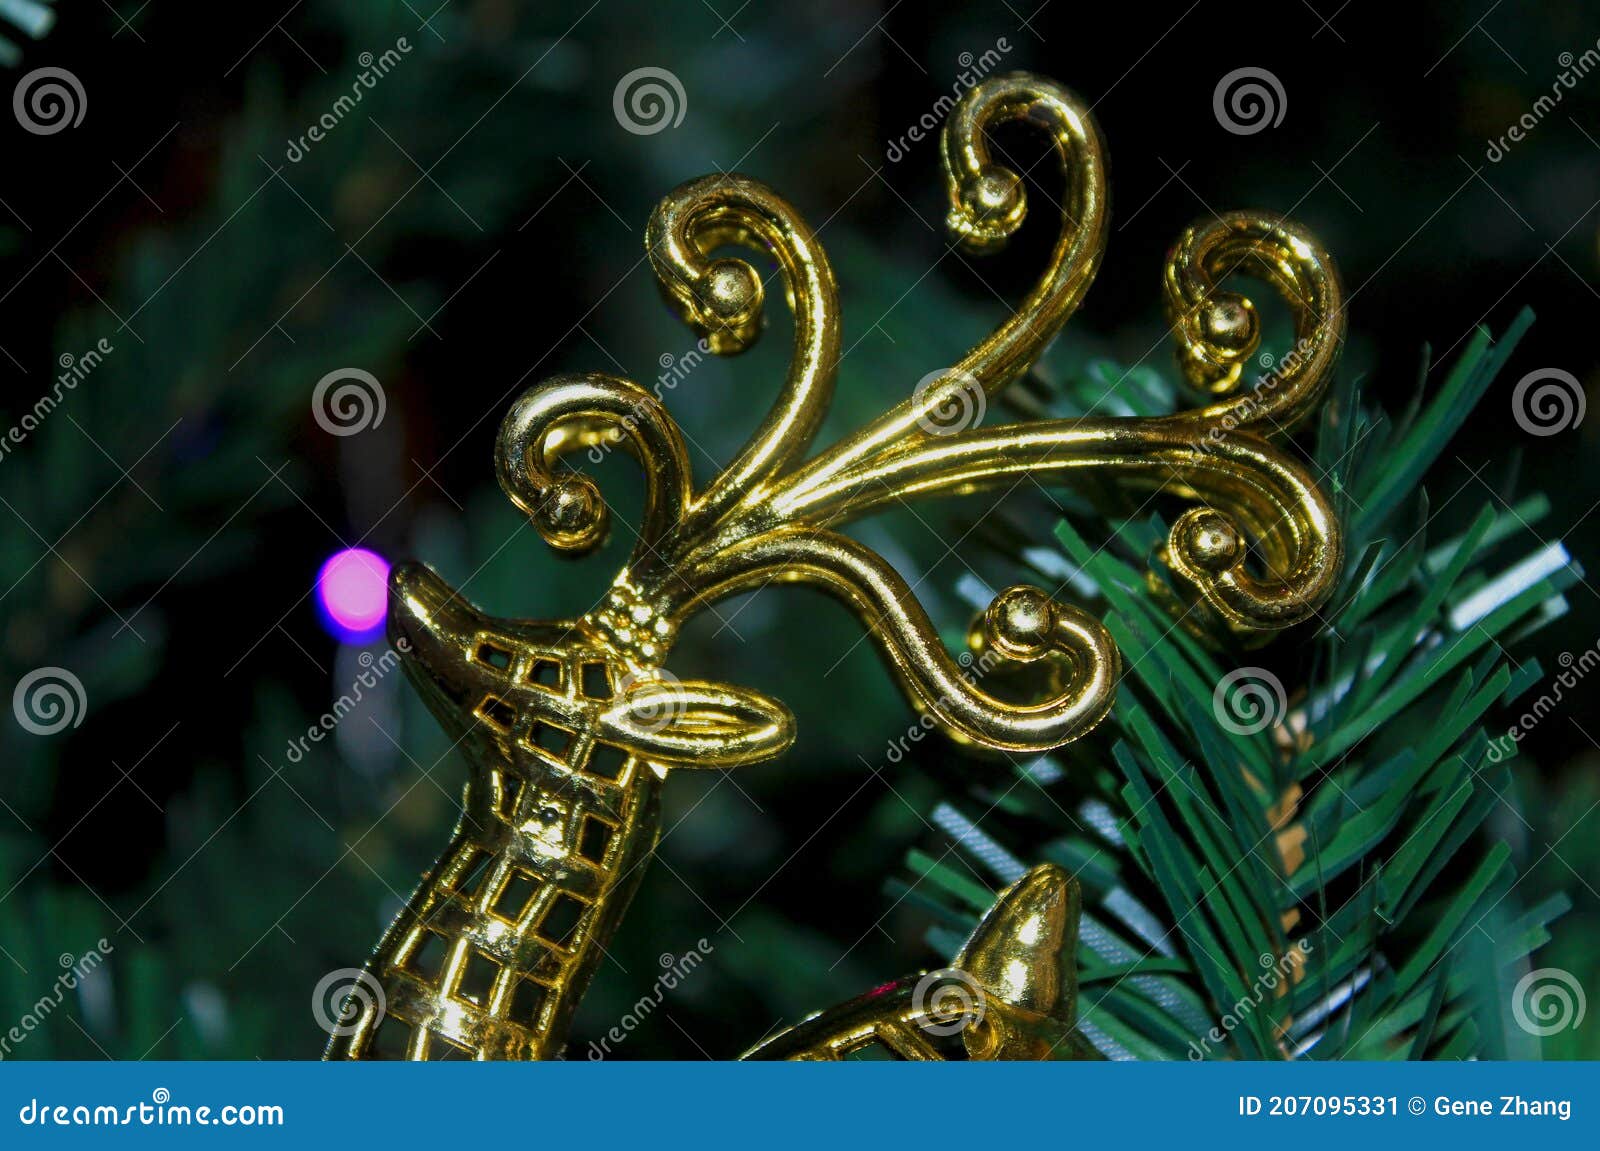 a golden deer in christmas tree